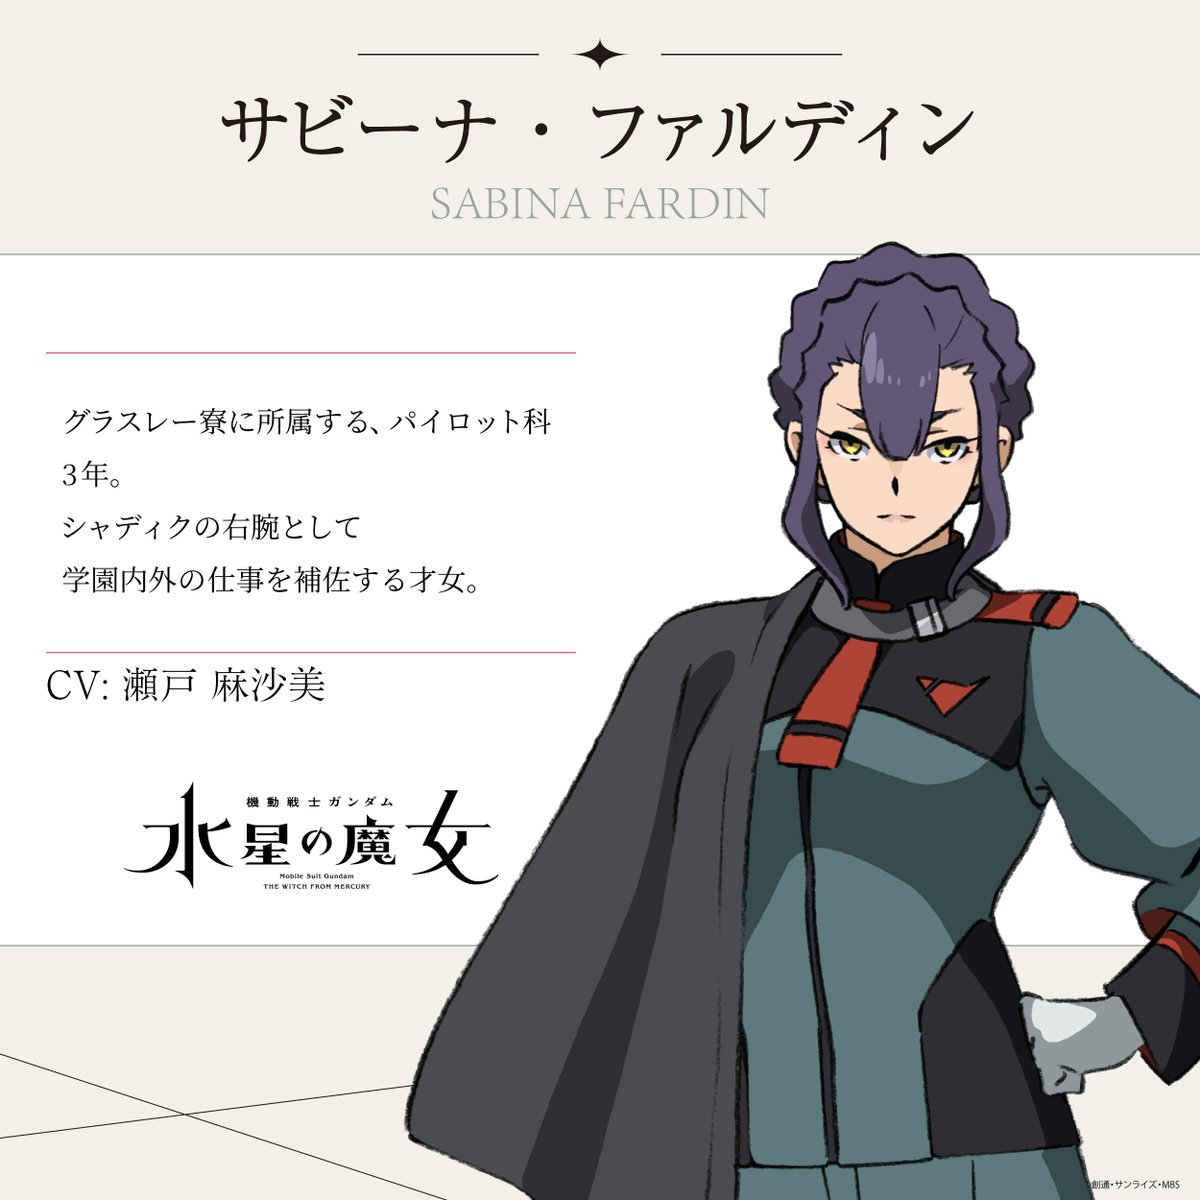 Mobile Suit Gundam: La bruja de Mercury Asami Seto como Sabina Fardin